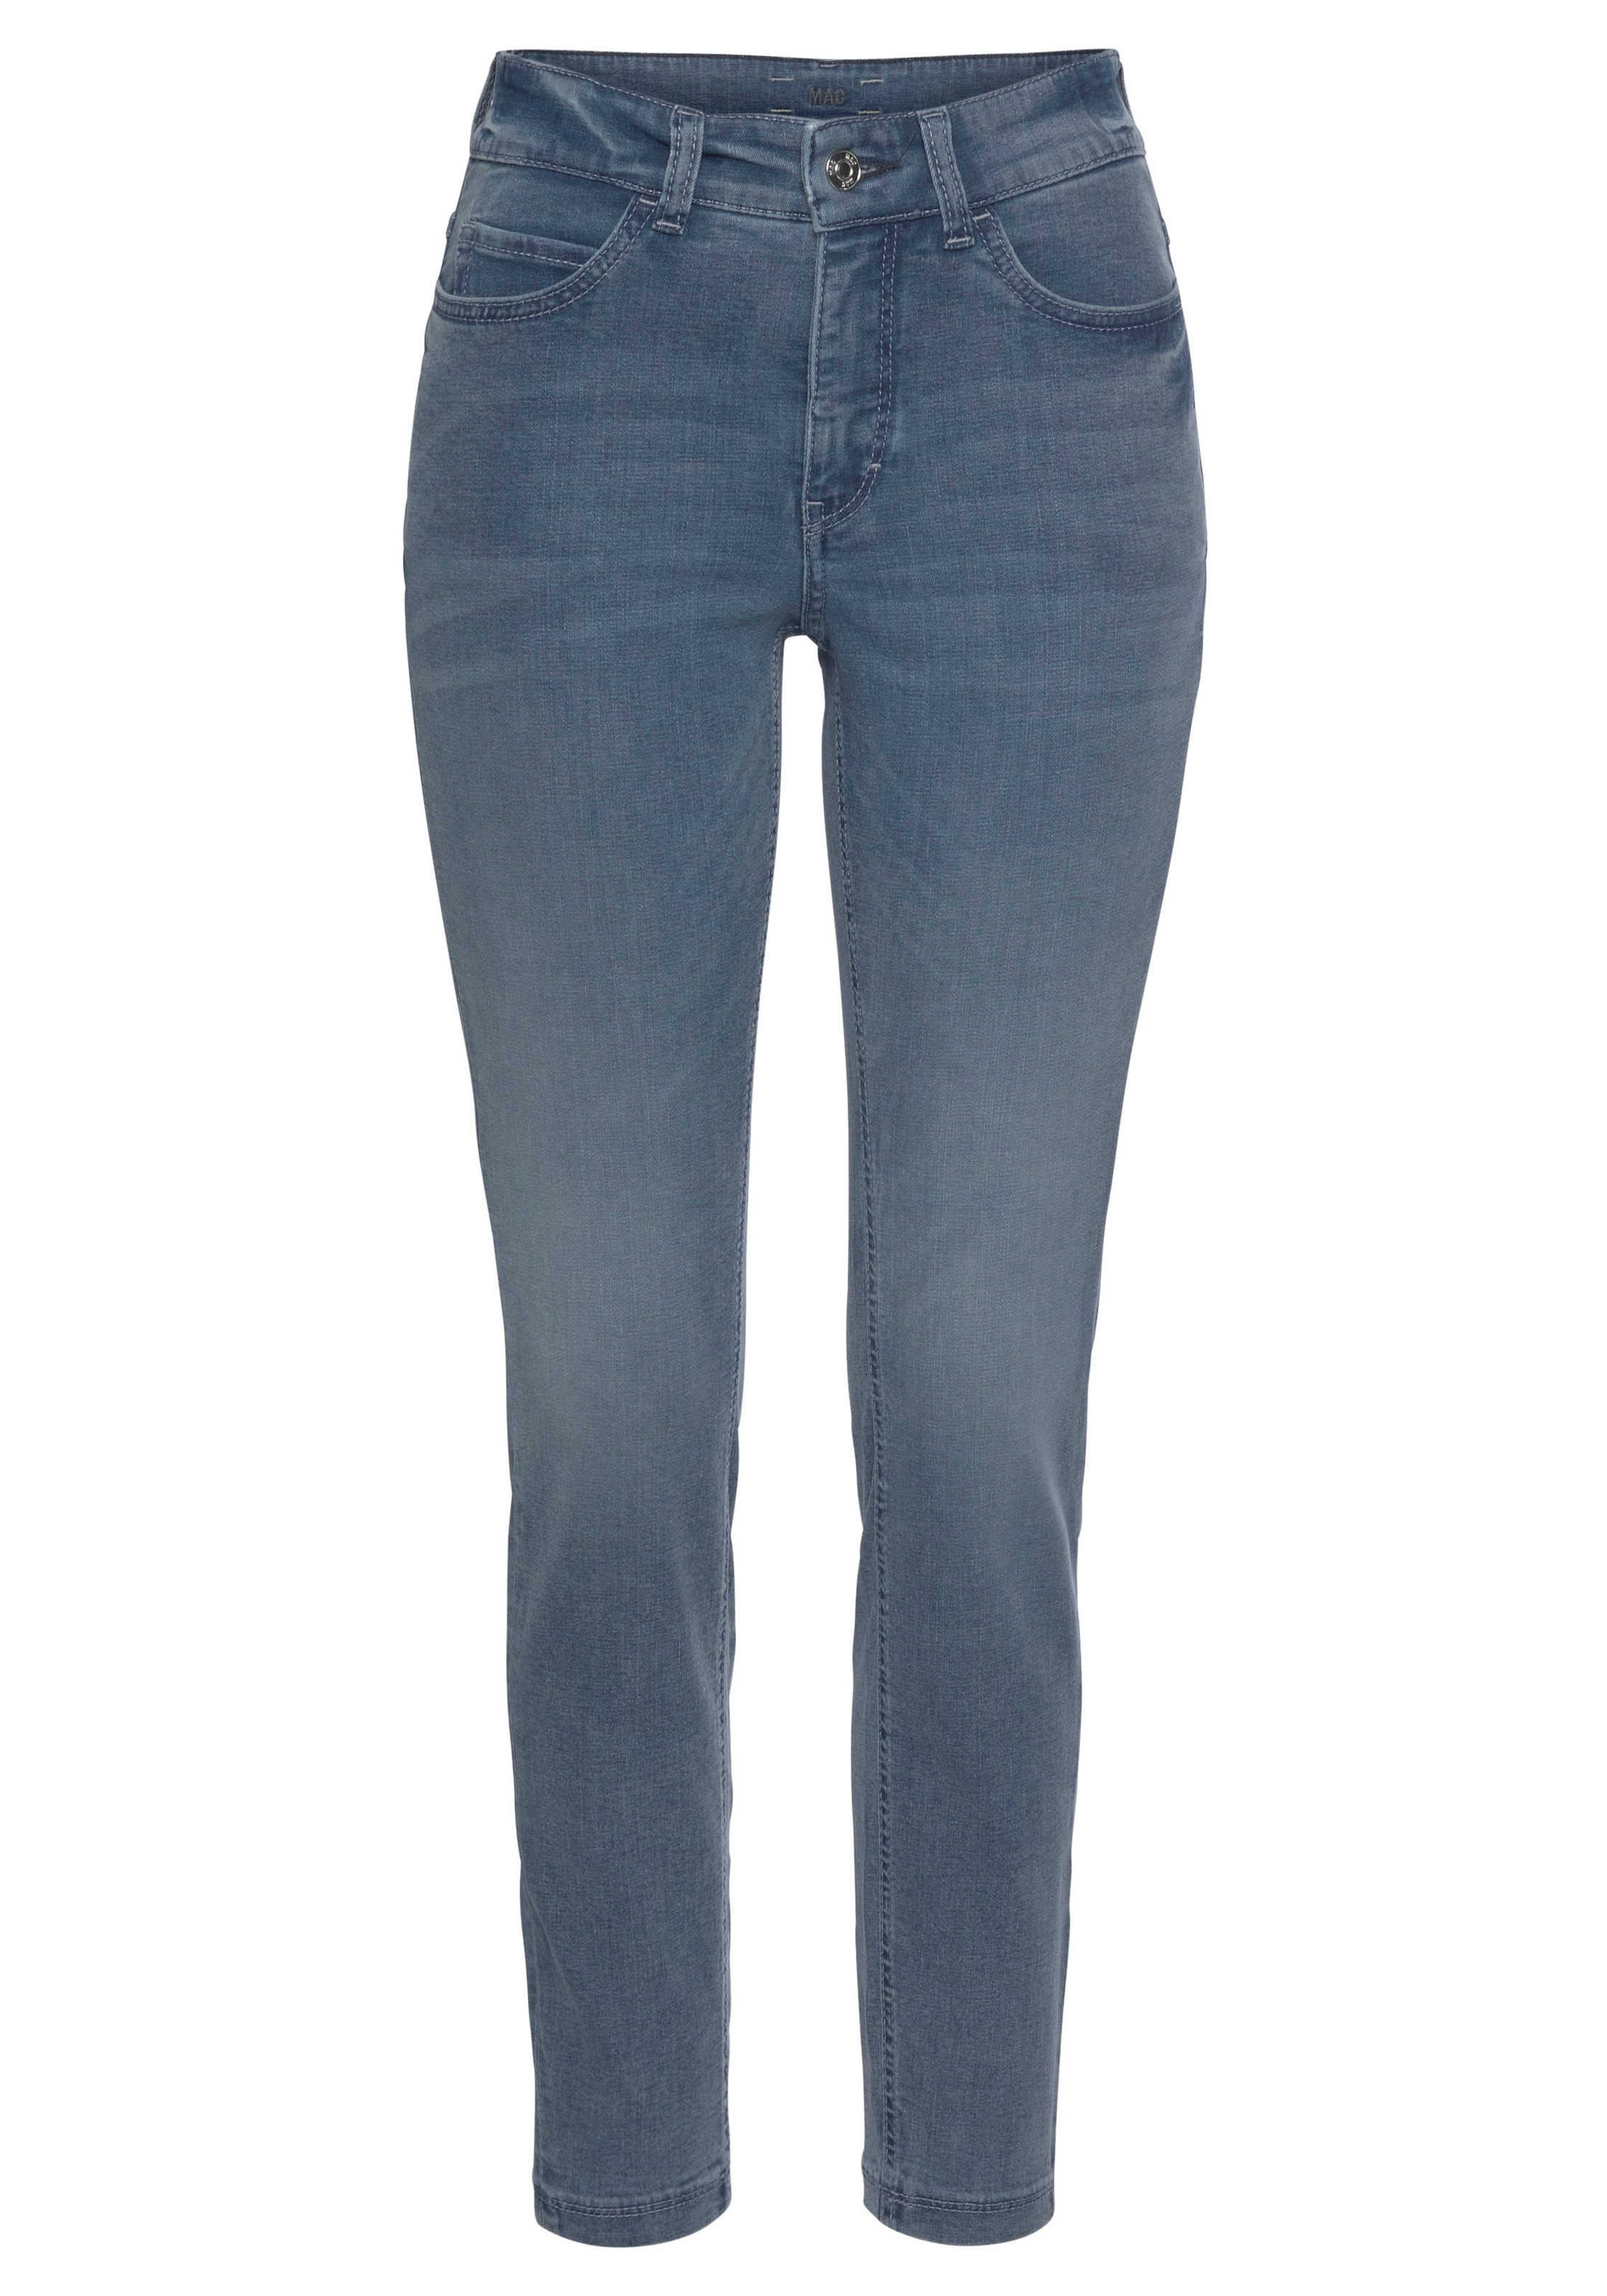 MAC bei bequem Power-Stretch ganzen Skinny-fit-Jeans Qualität sitzt Tag OTTOversand »Hiperstretch-Skinny«, den